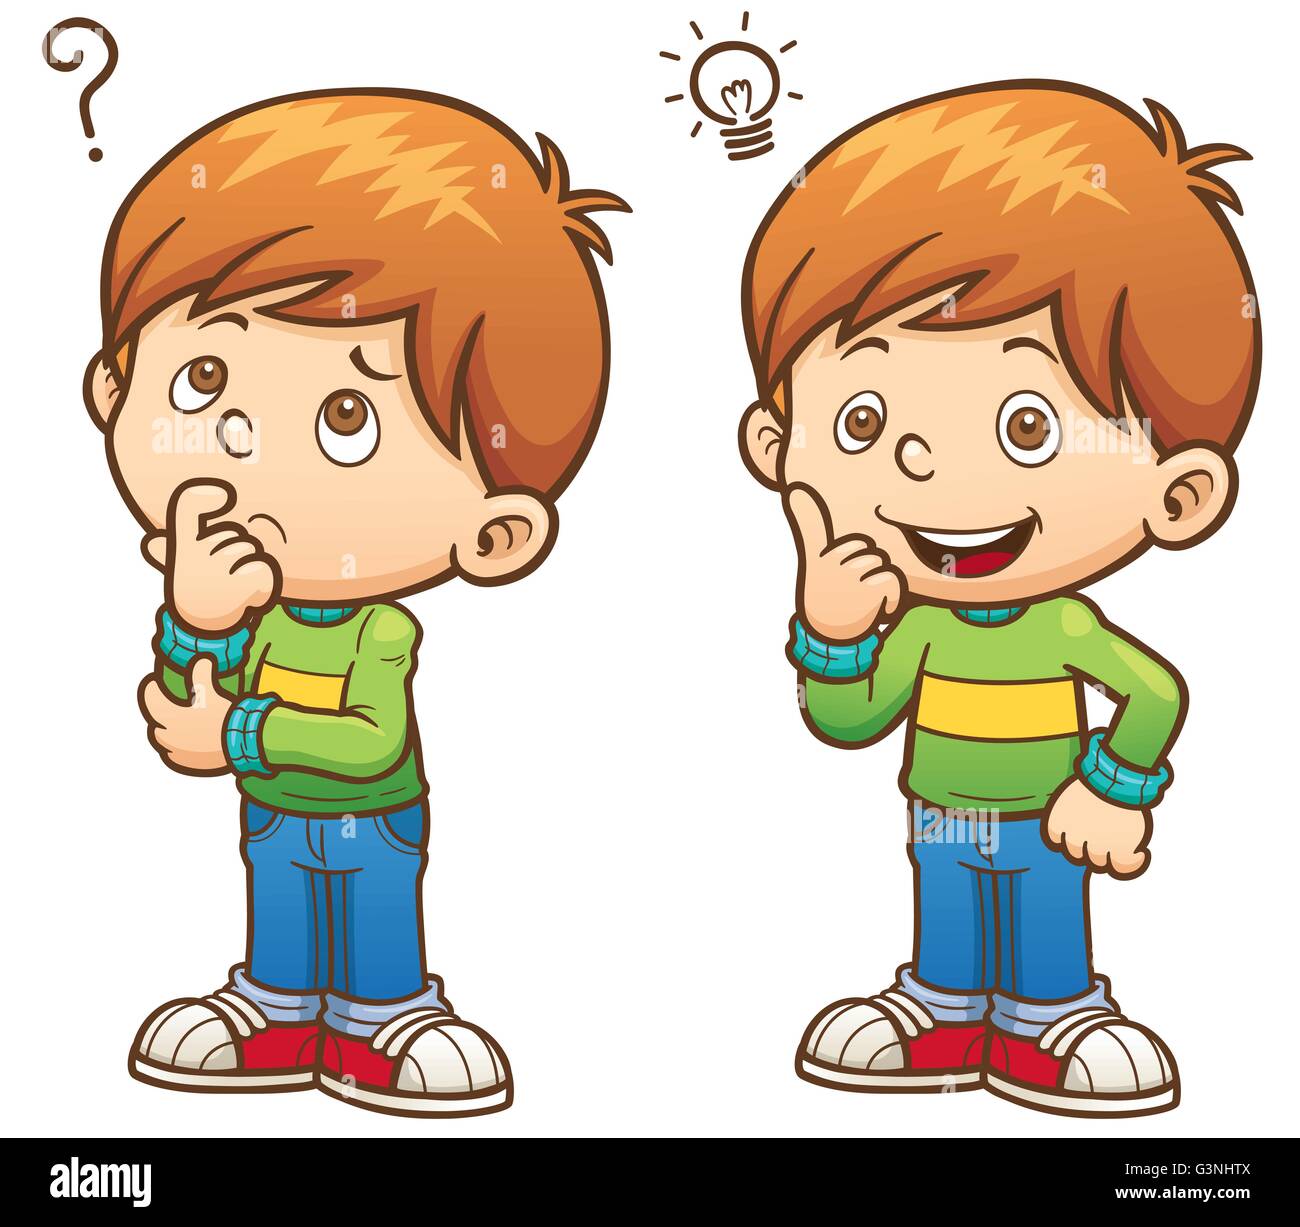 Vector illustration of Cartoon Boy thinking Stock Vector